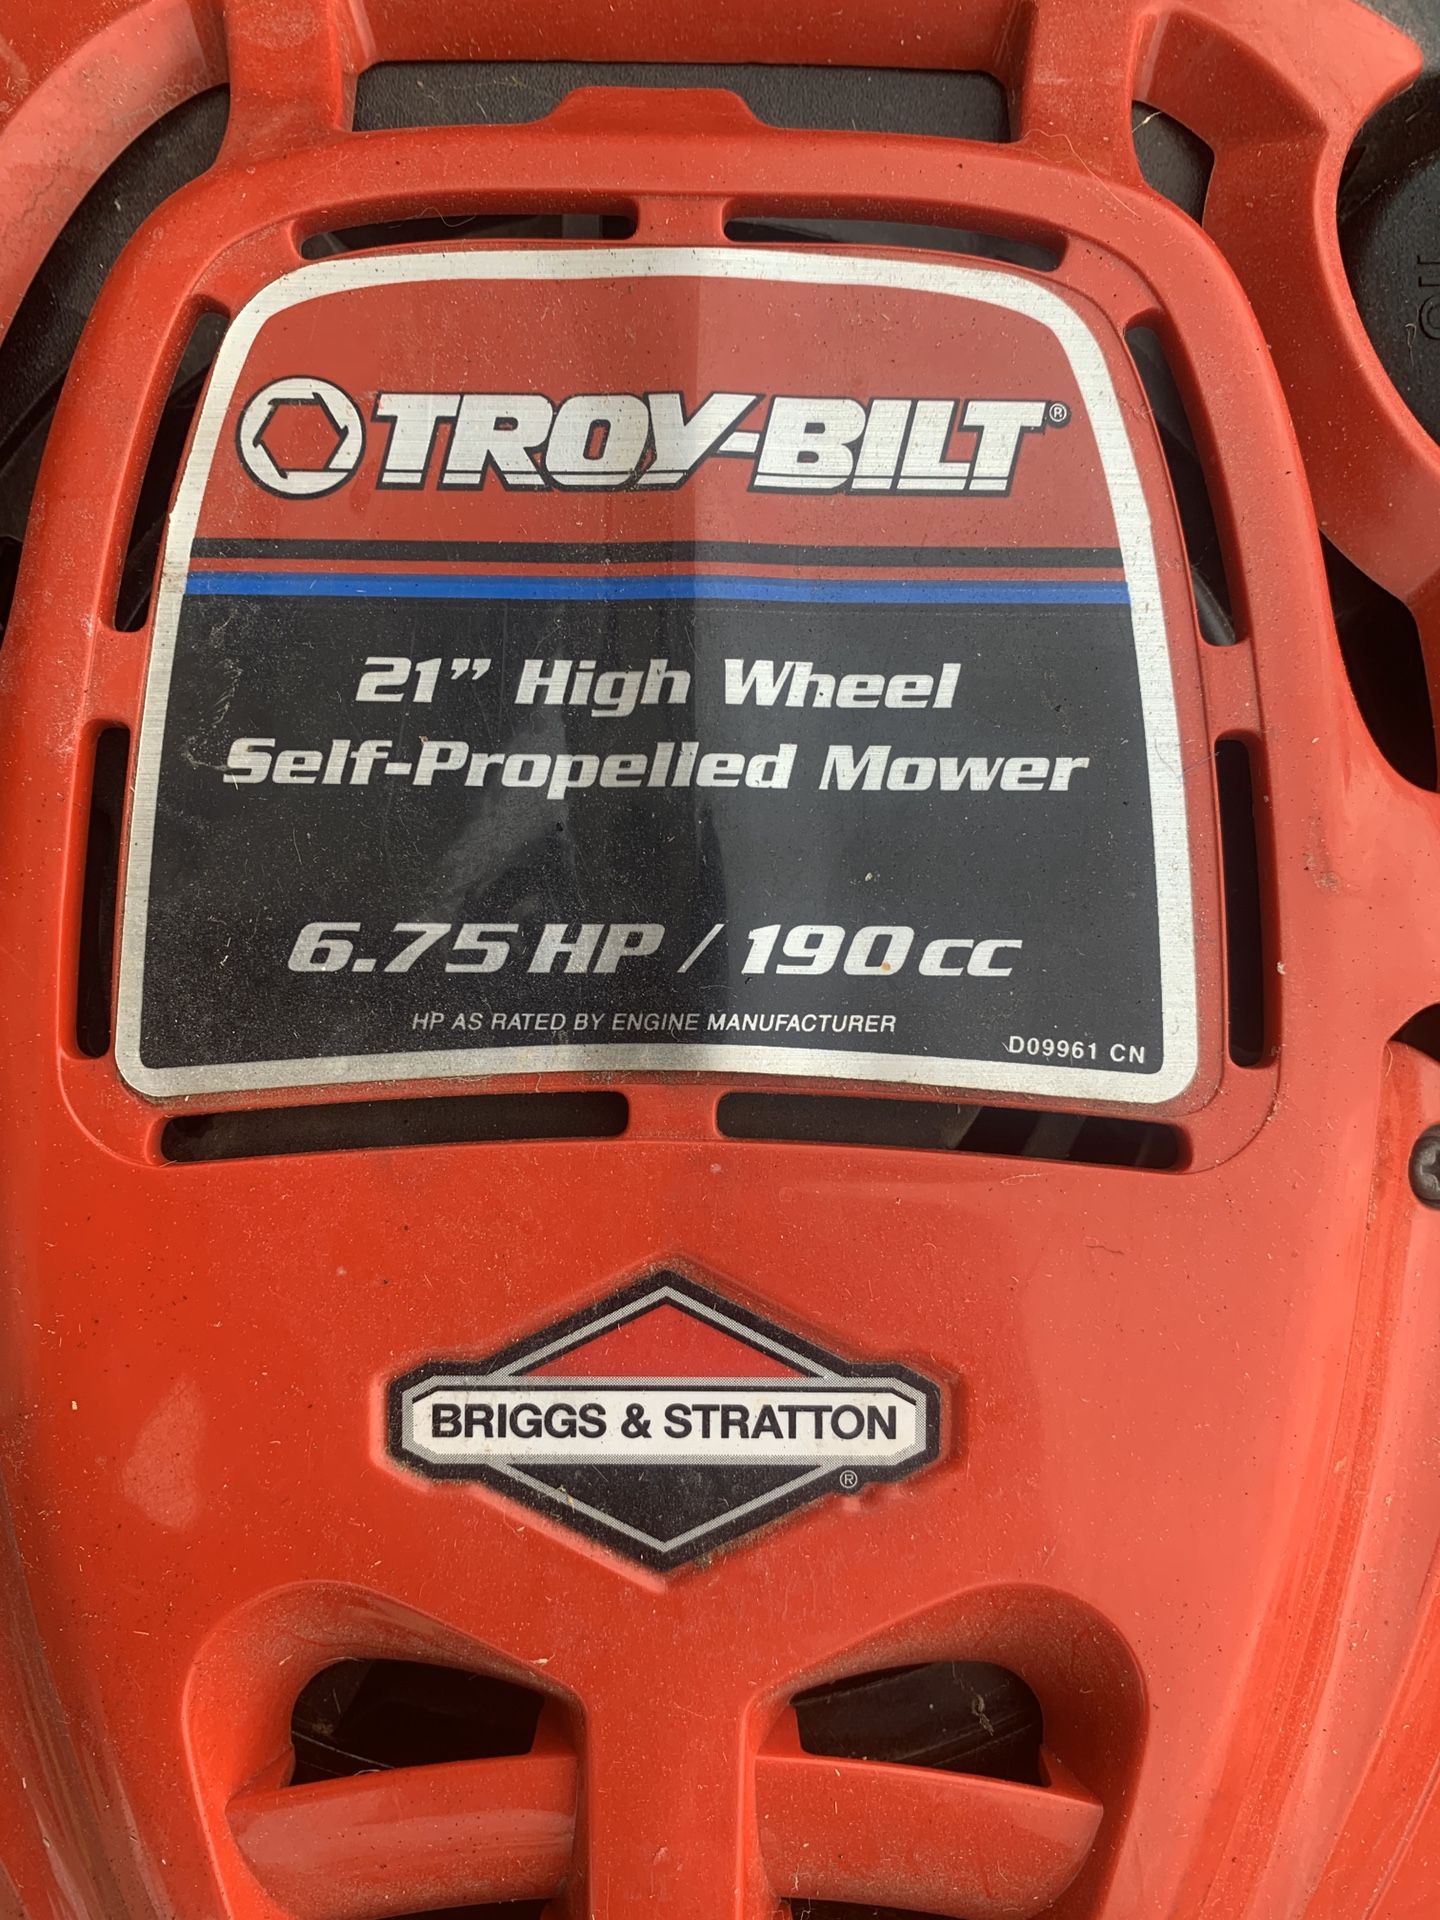 Troy-Bilt 21” Self-Propelled lawn mower